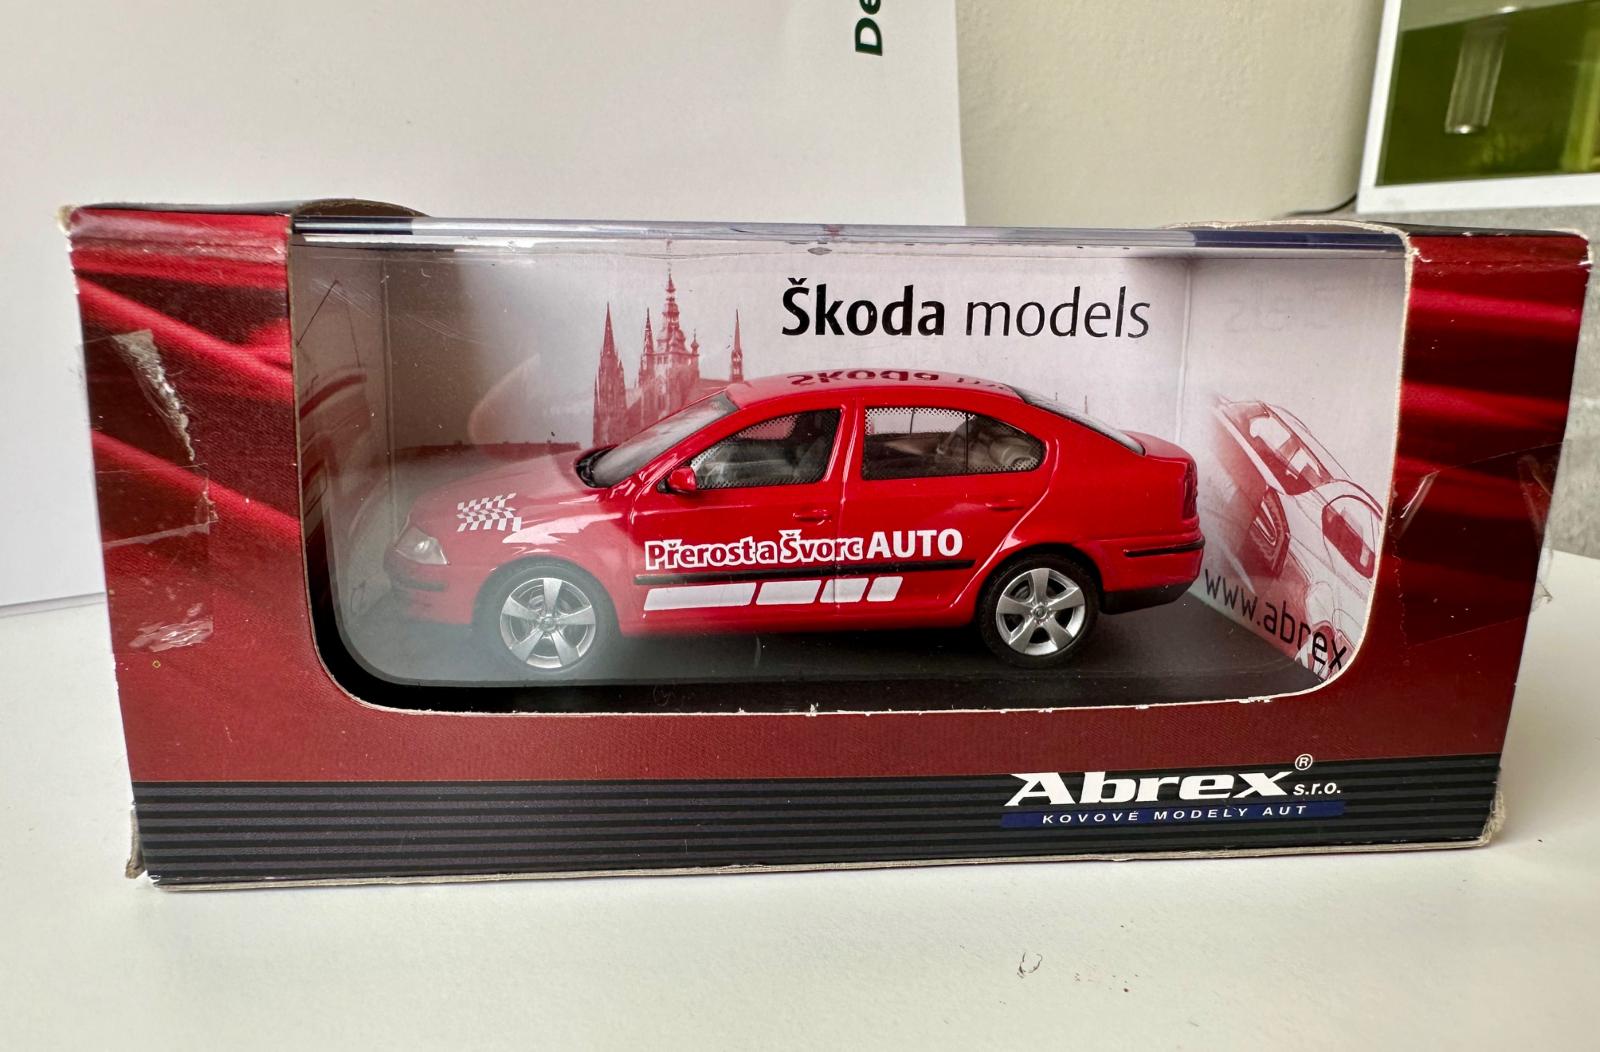 1/43 Abrex - Škoda Octavia Prerast & Švorc - Modely automobilov